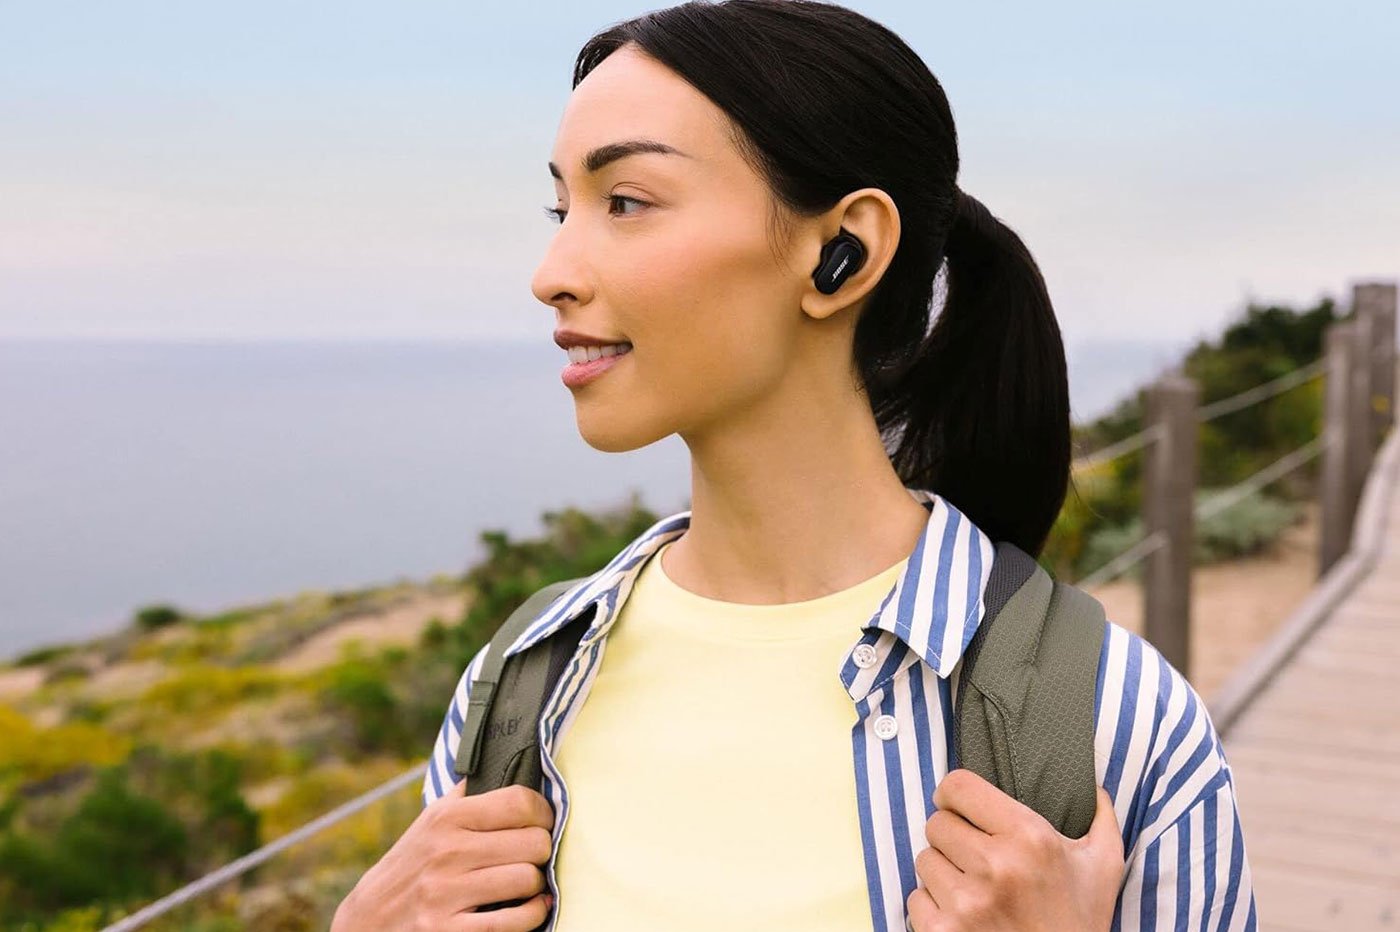 Ecouteurs sans fil Bose QuietComfort Earbuds II –